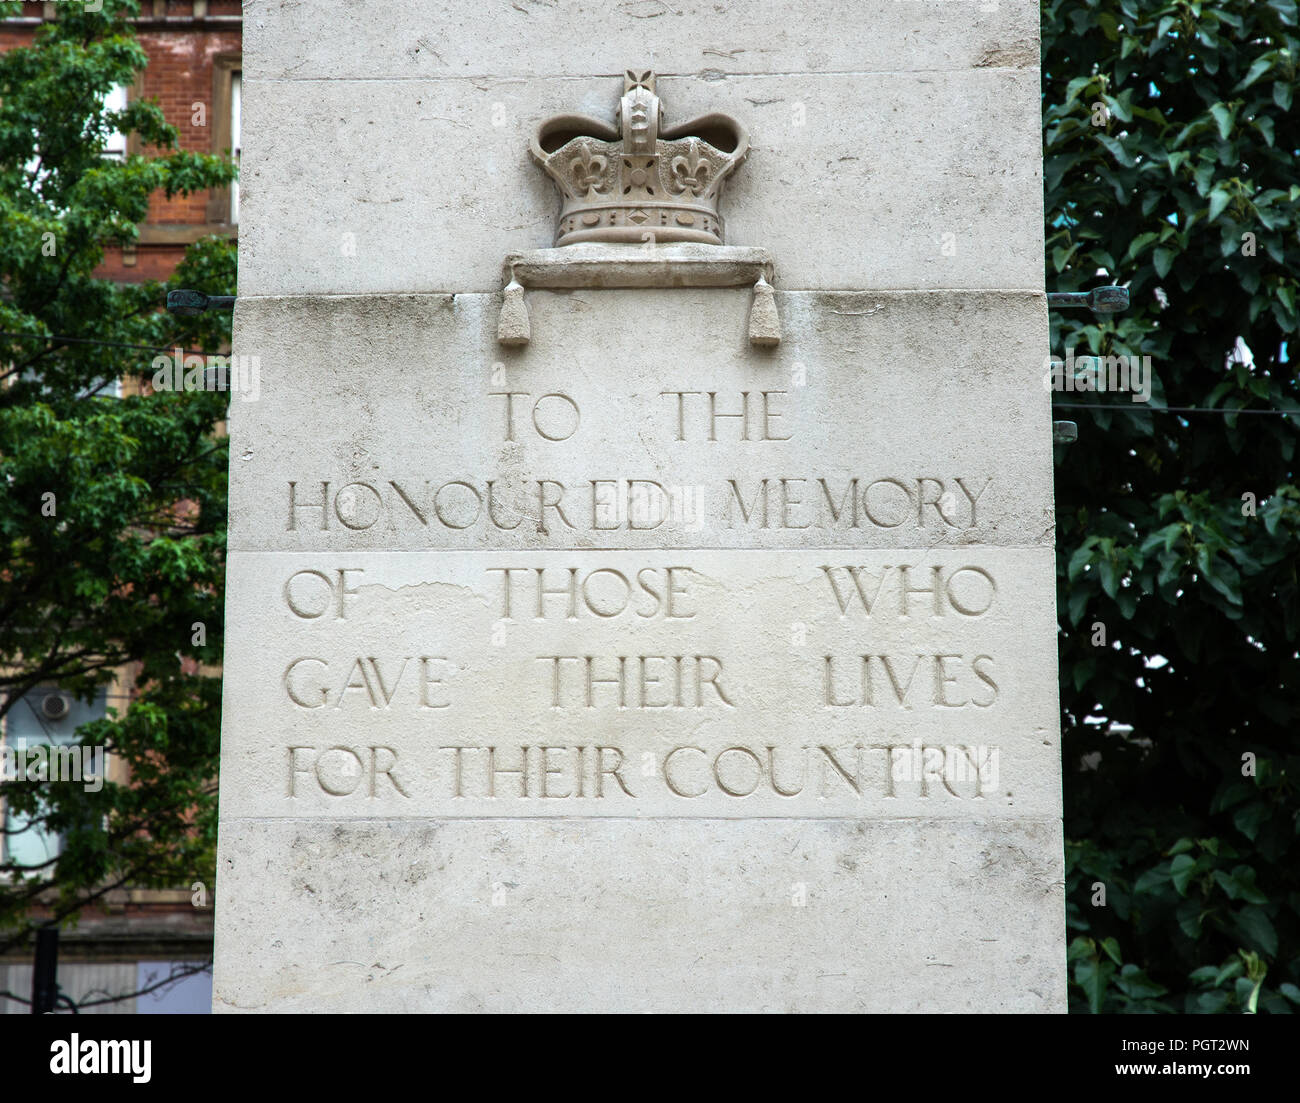 Cenotafio Central Manchester War Memorial mostrando crown y la inscripción a la honra la memoria DE AQUELLOS QUE DIERON SU VIDA POR SU PAÍS Foto de stock